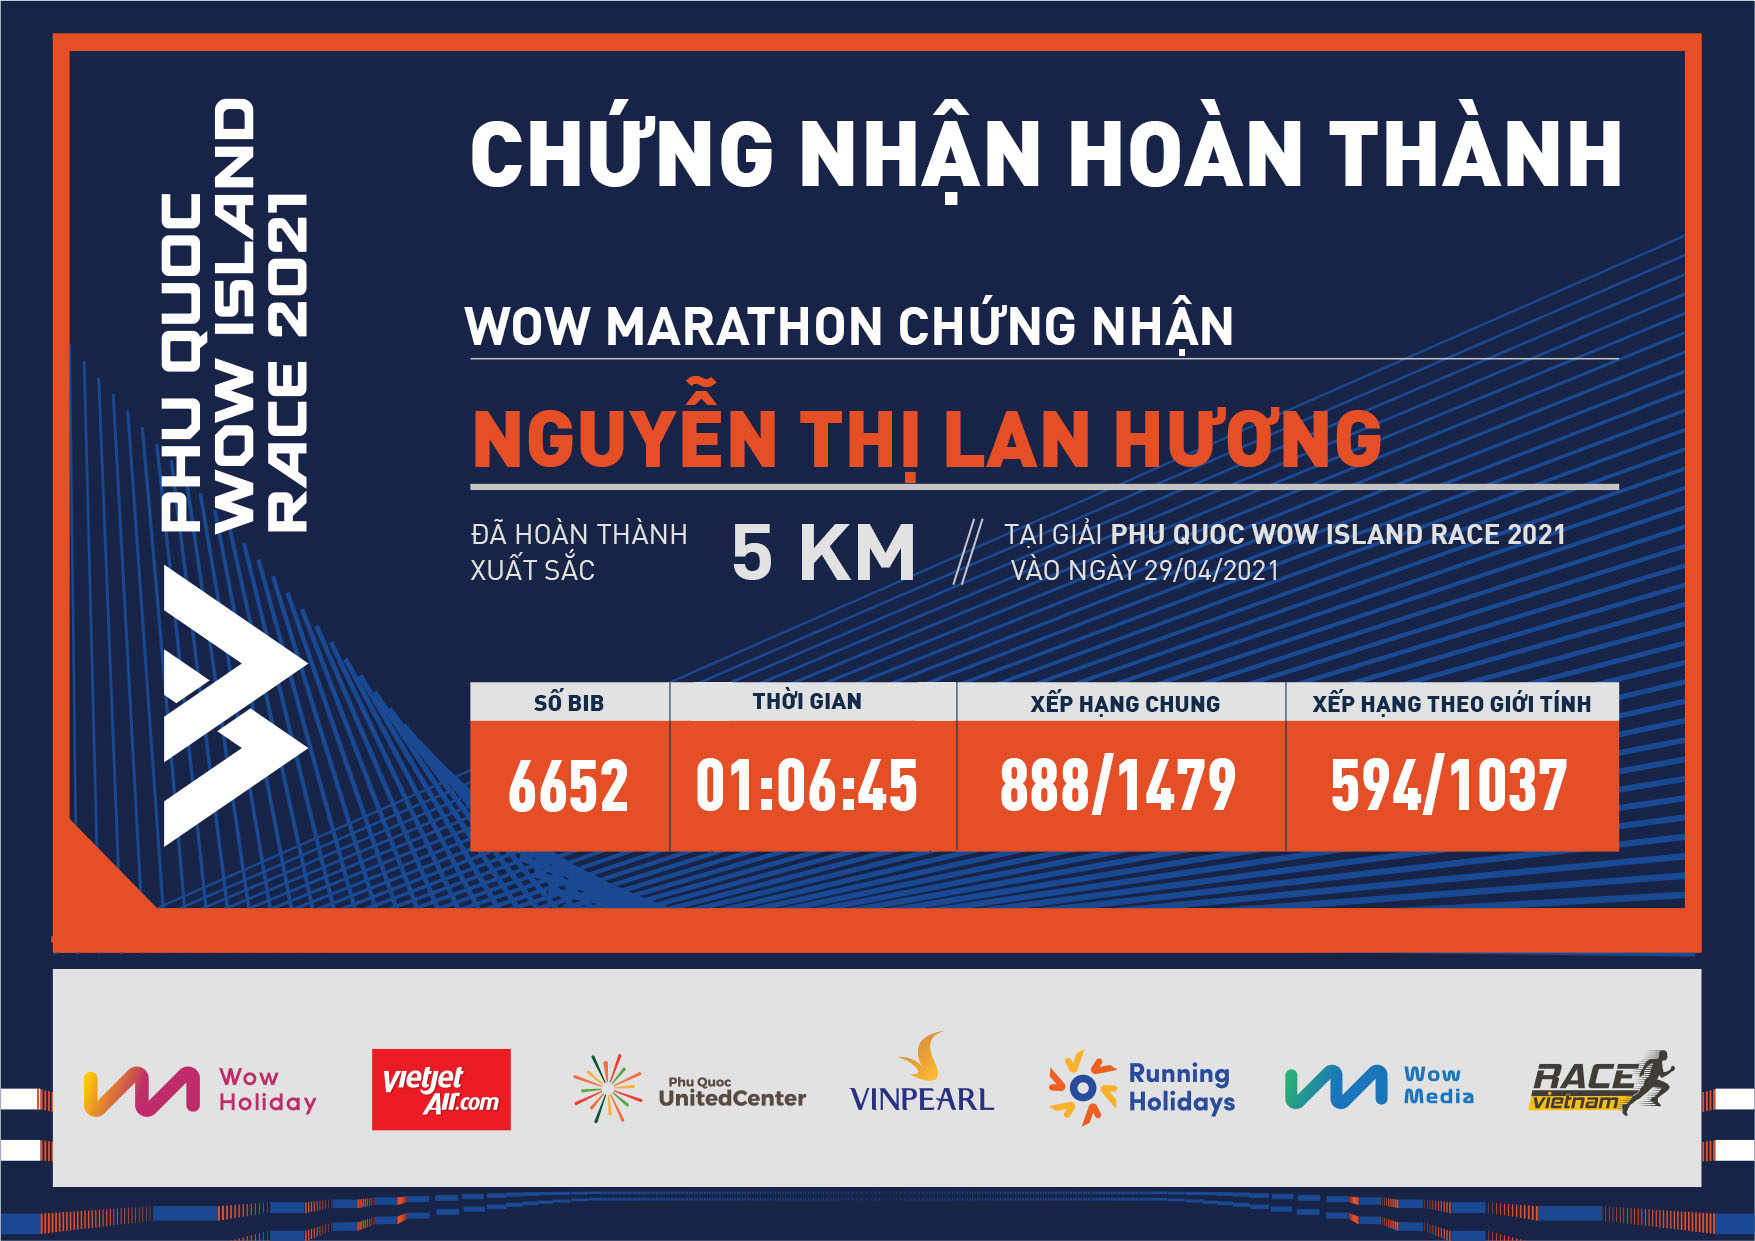 6652 - Nguyễn Thị Lan Hương